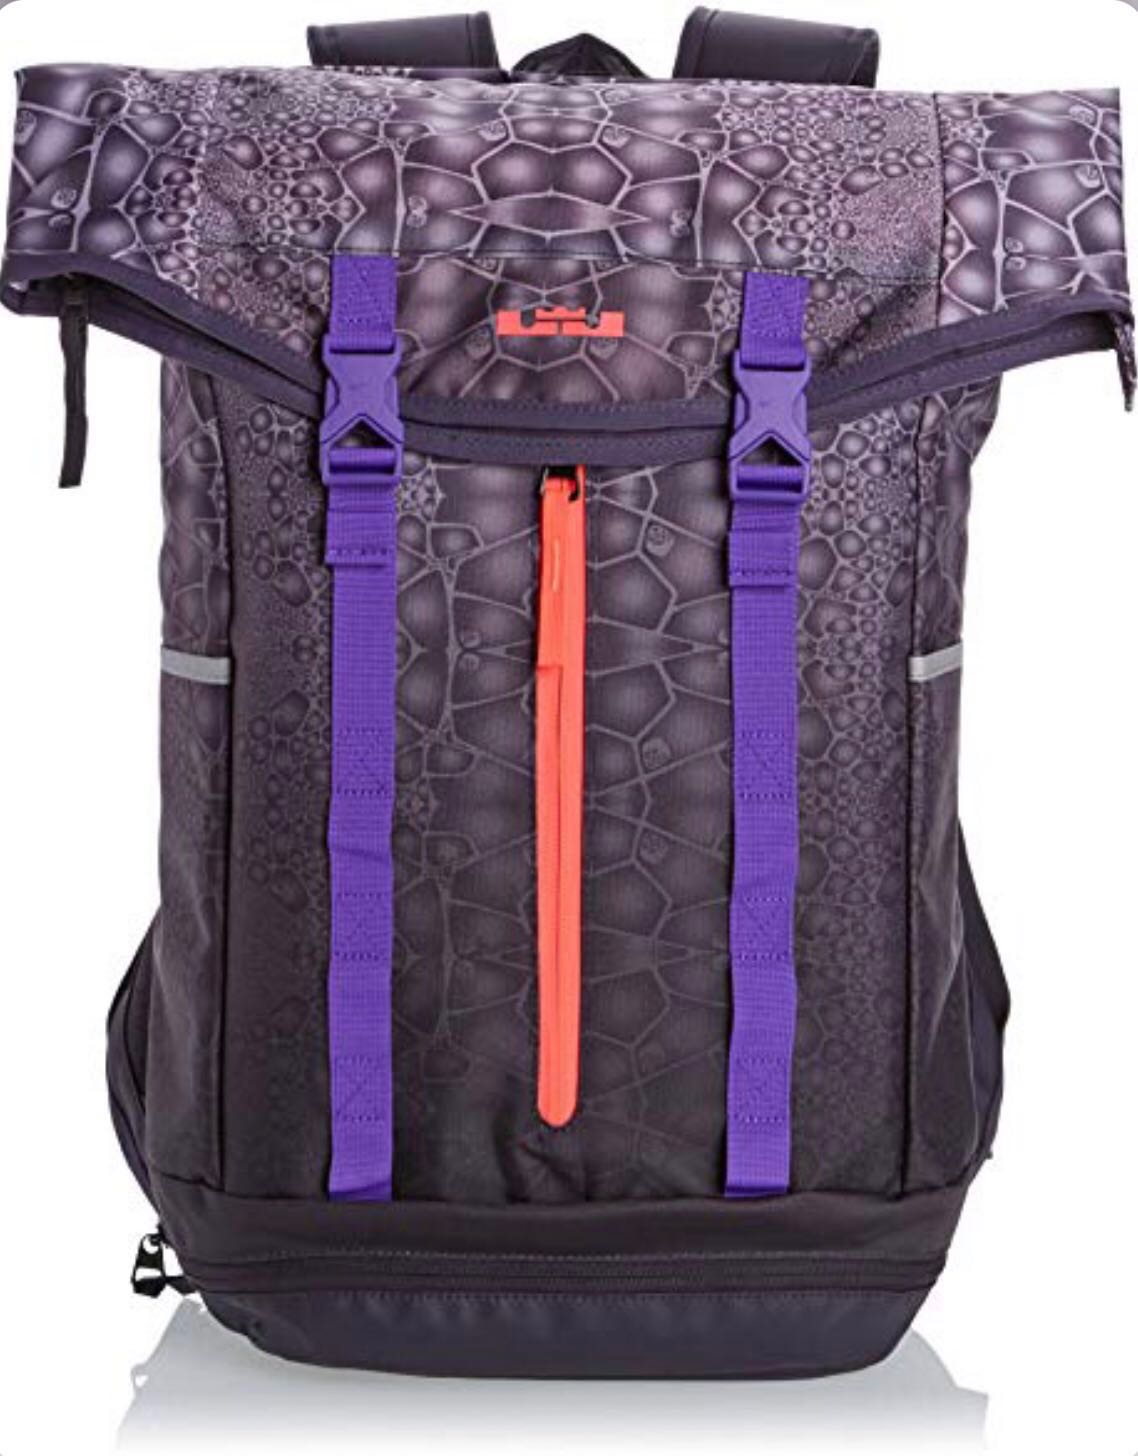 lebron backpack 2019